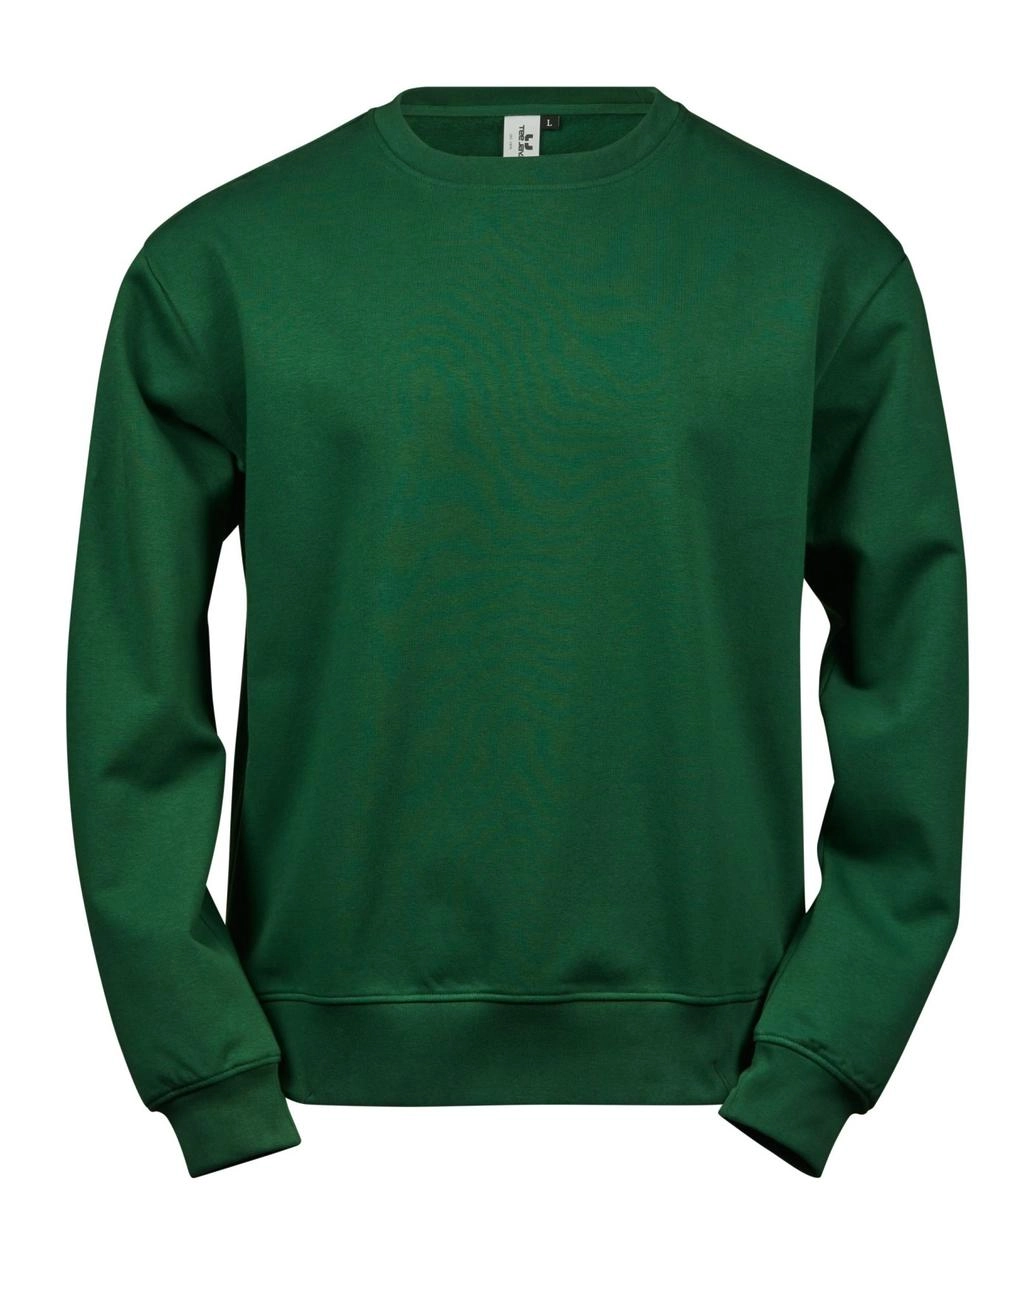 Power Sweatshirt zum Besticken und Bedrucken in der Farbe Forest Green mit Ihren Logo, Schriftzug oder Motiv.